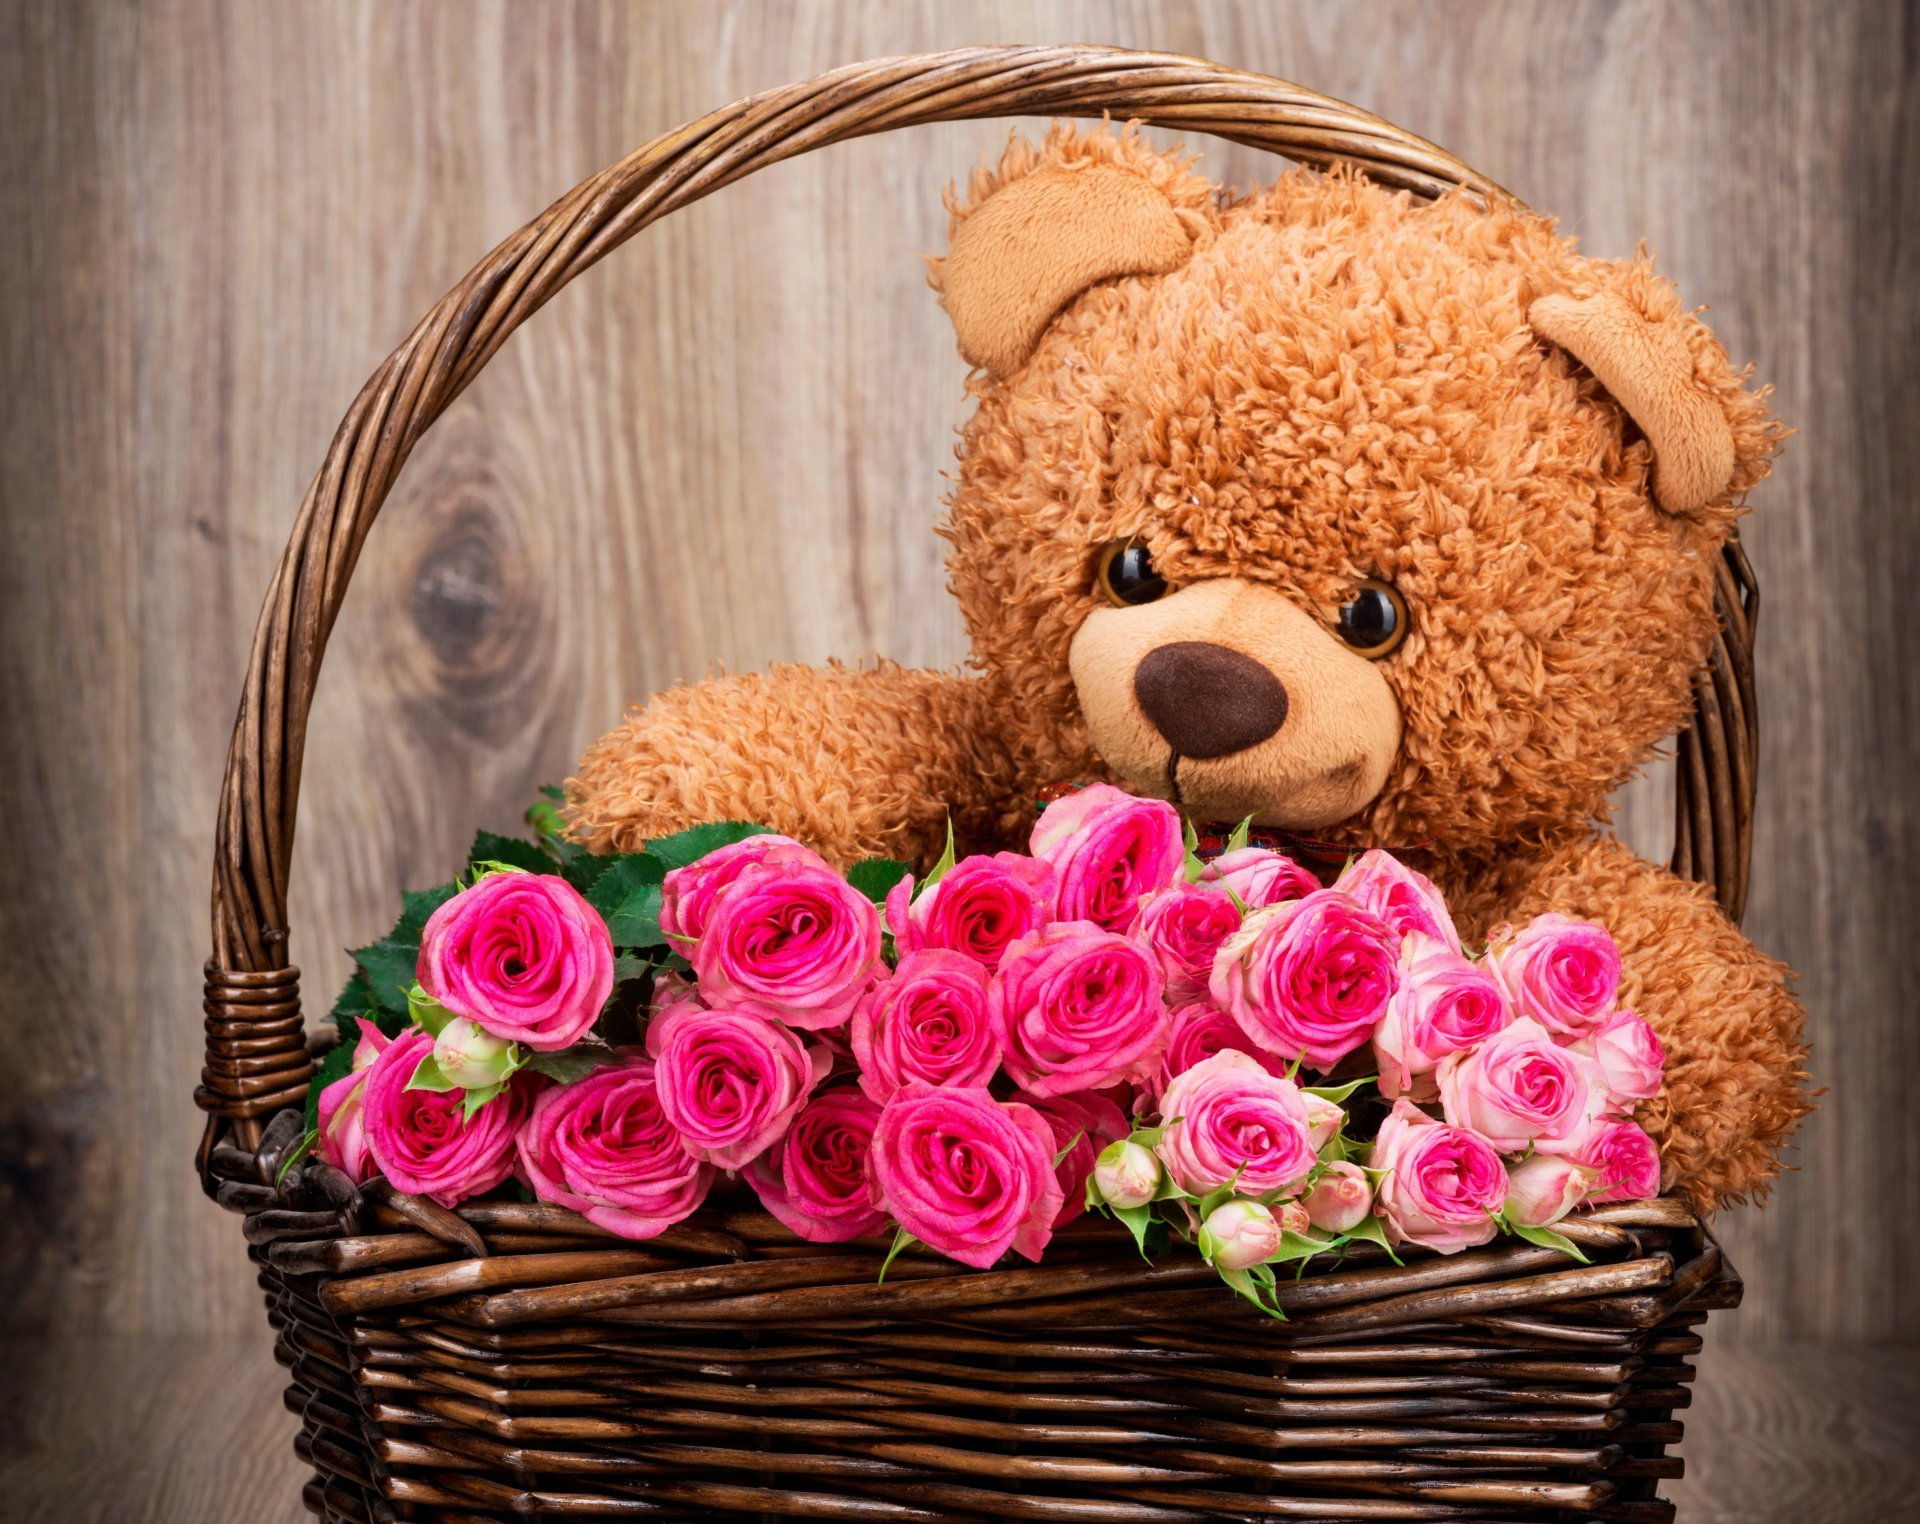 Hình gấu bông ngồi trong giỏ hoa